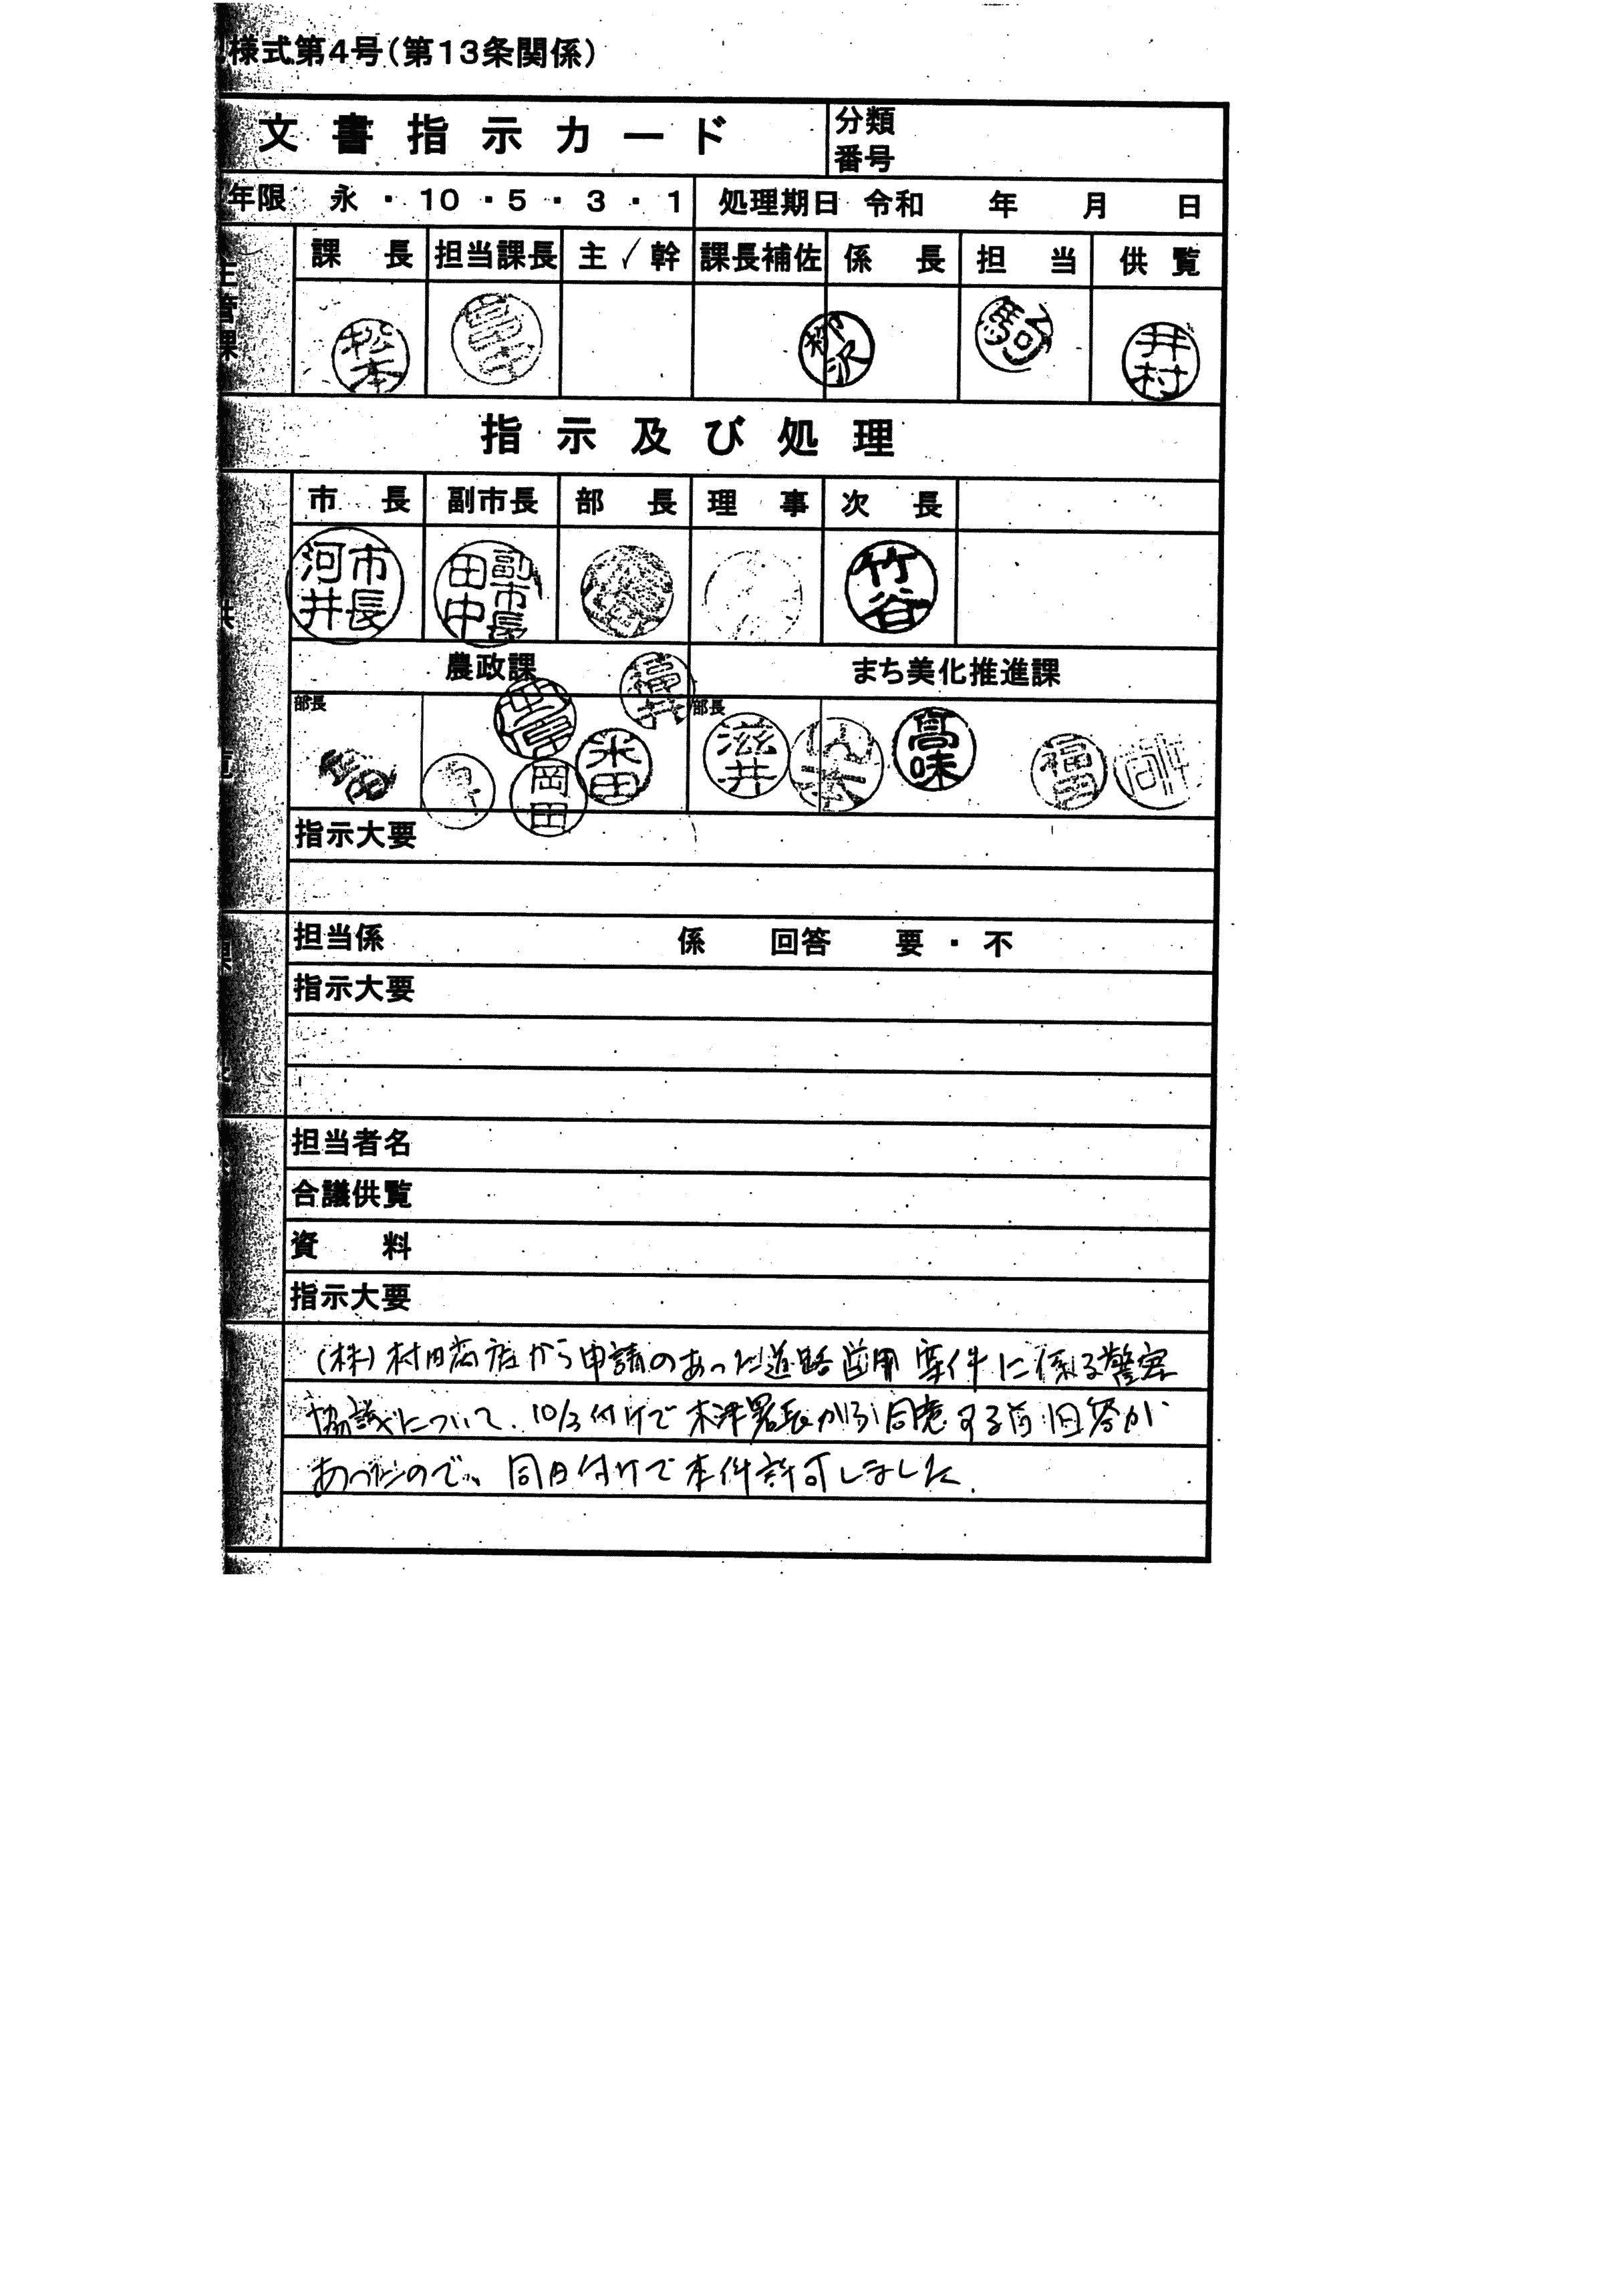 令和1年10月3日-木津警察署長同意書-05